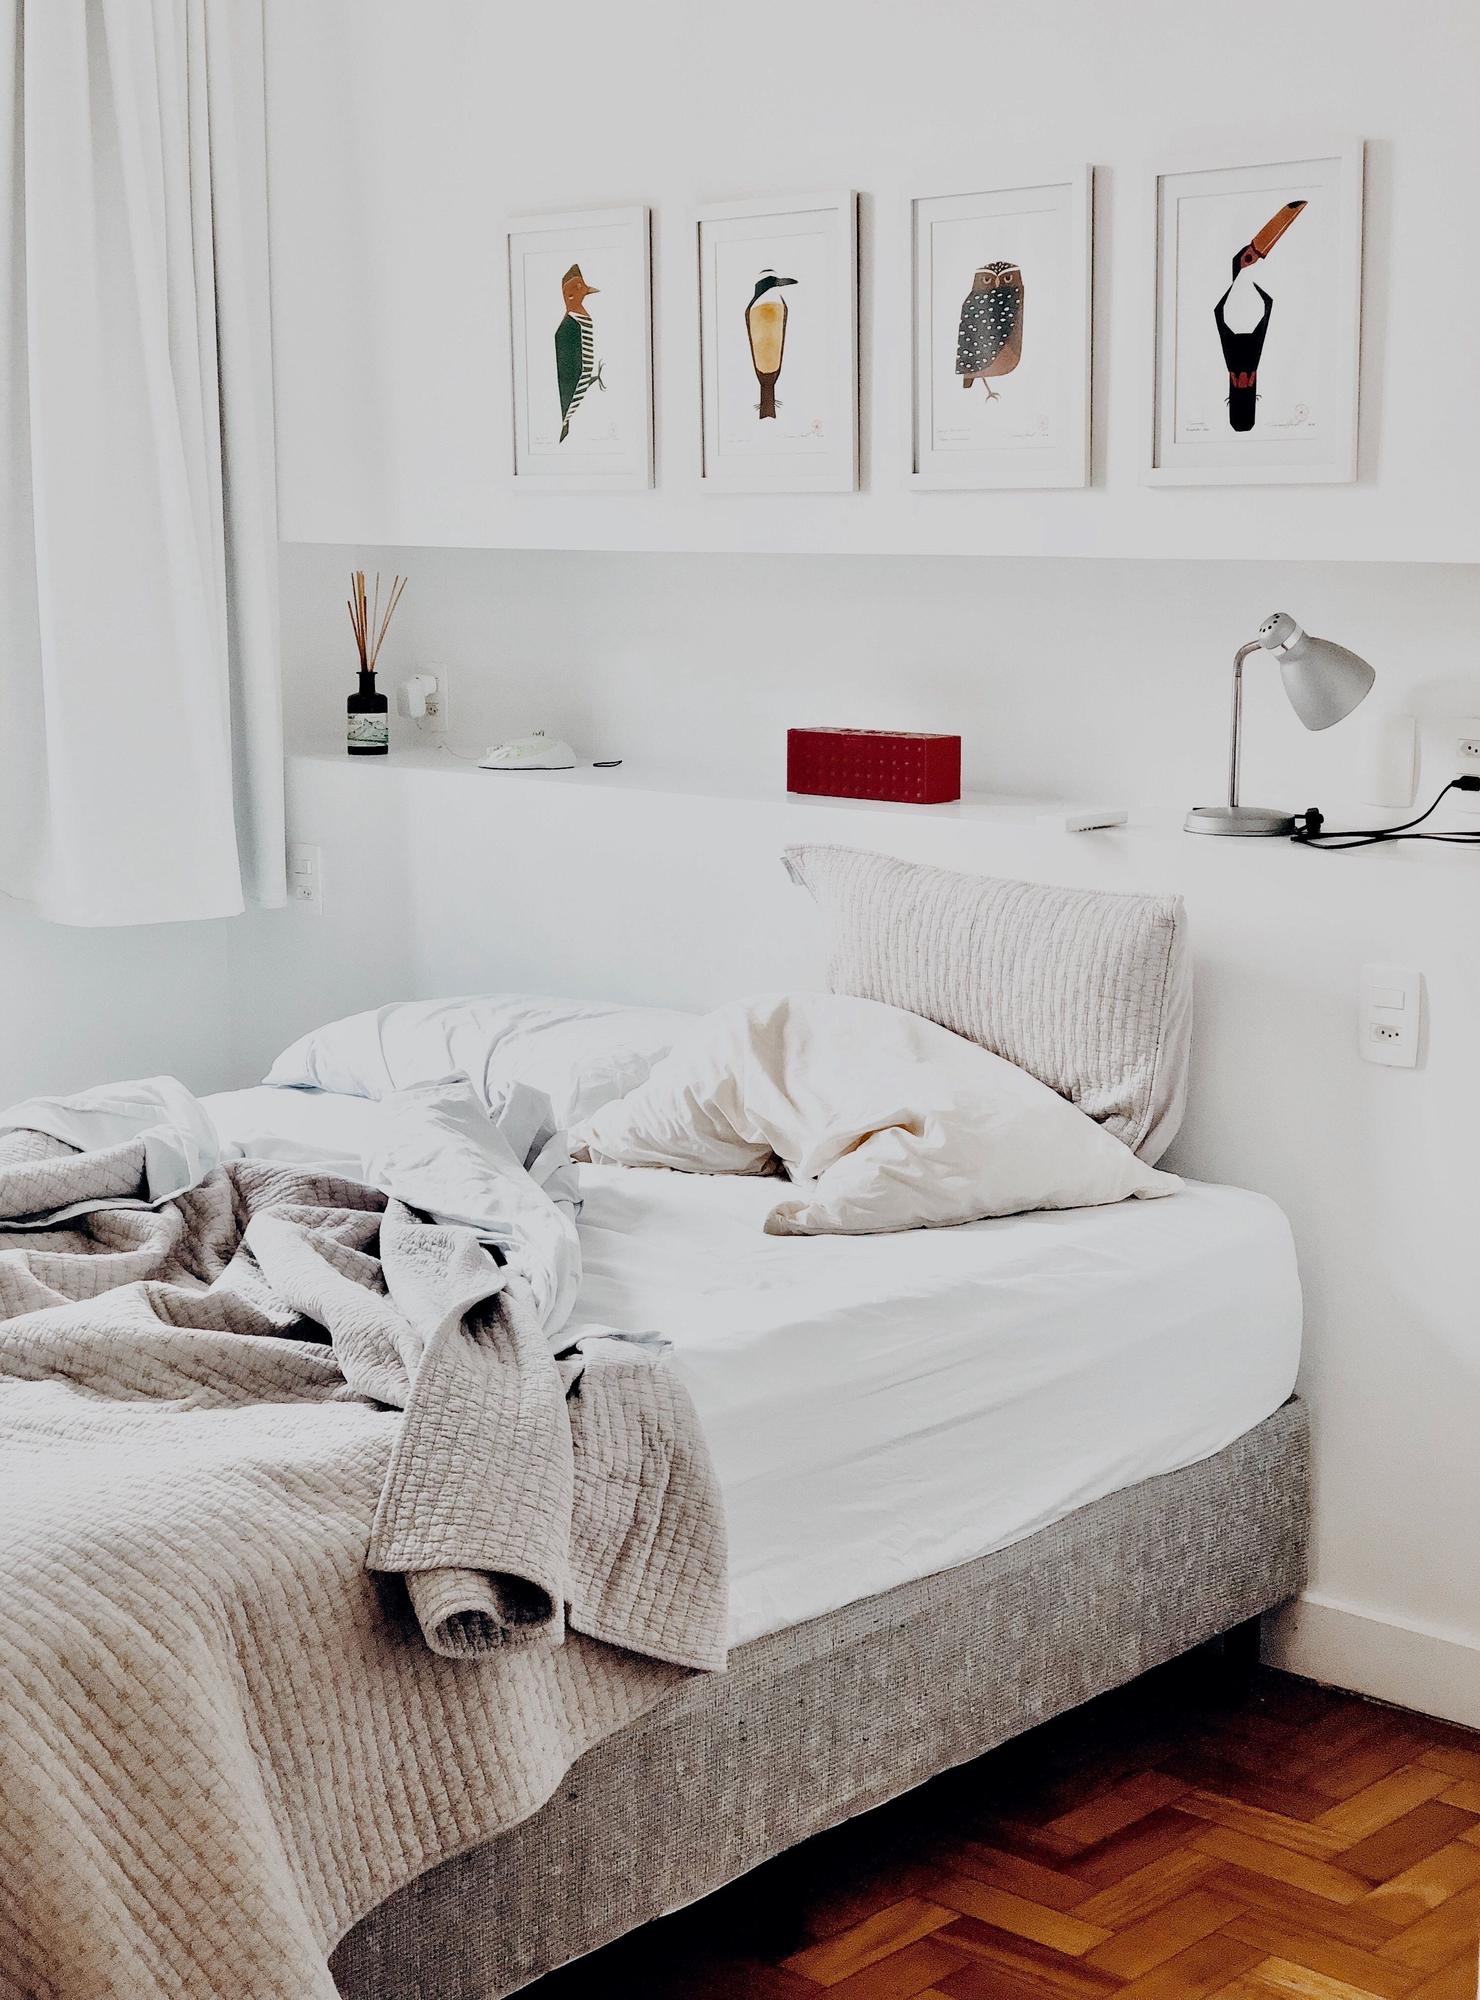 Hacer la cama requiere muy poco tiempo y da la sensación de un mayor orden y limpieza en la casa.